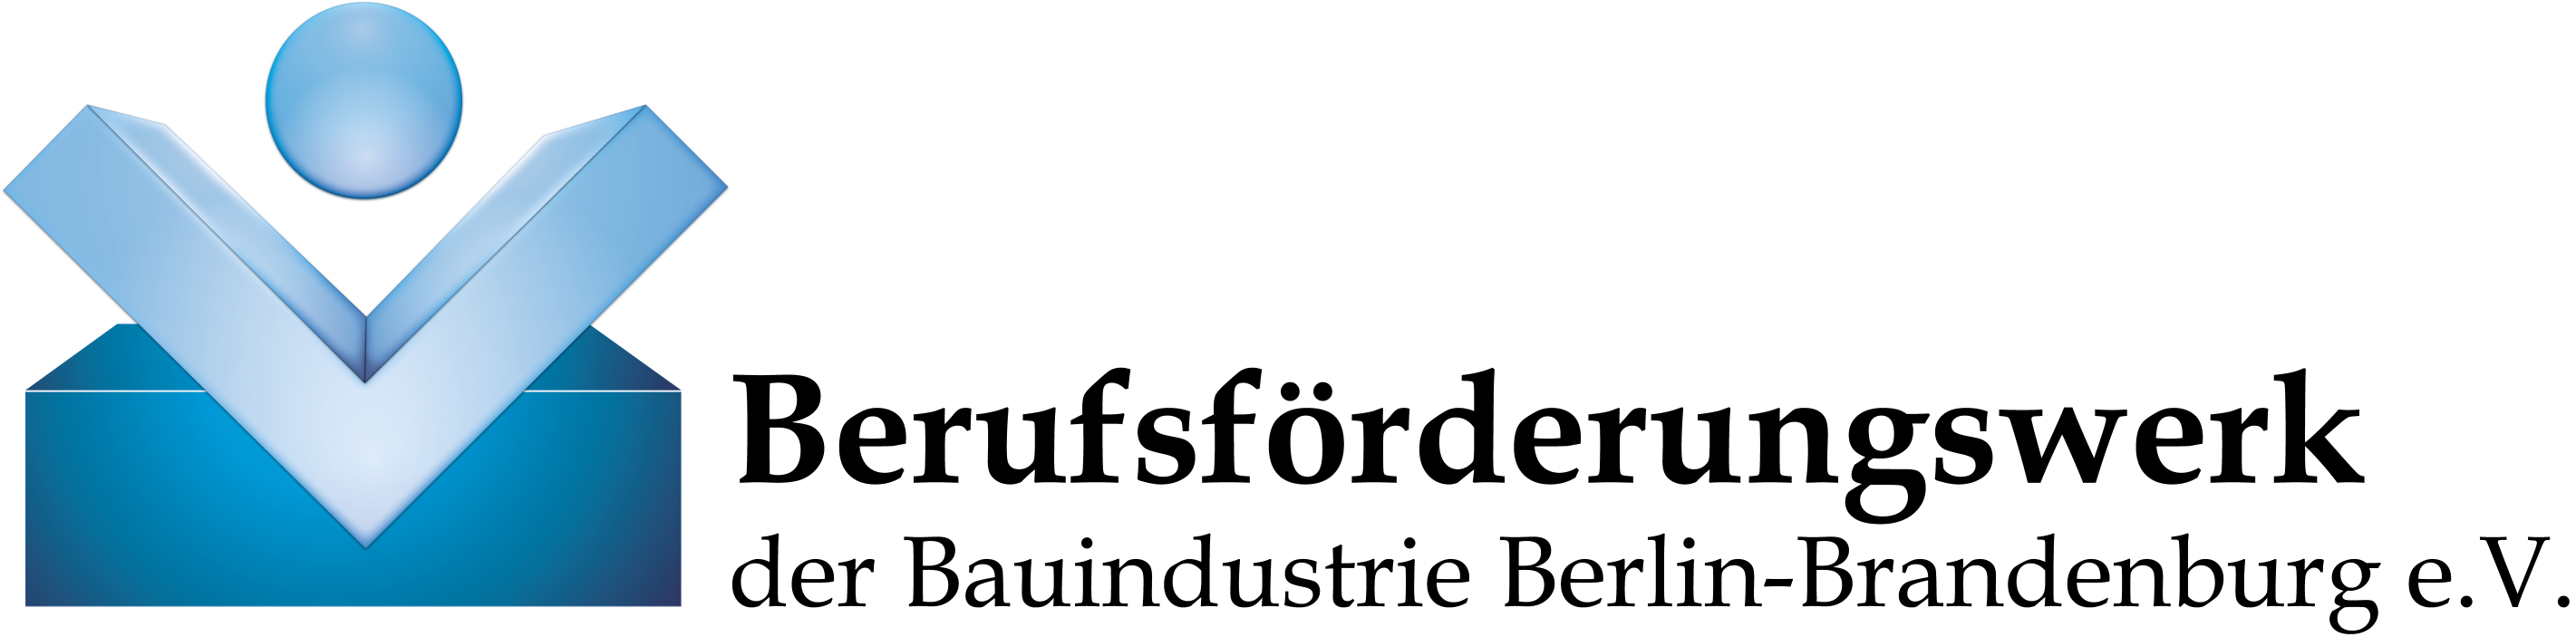 C:akepathBFW Logo klein